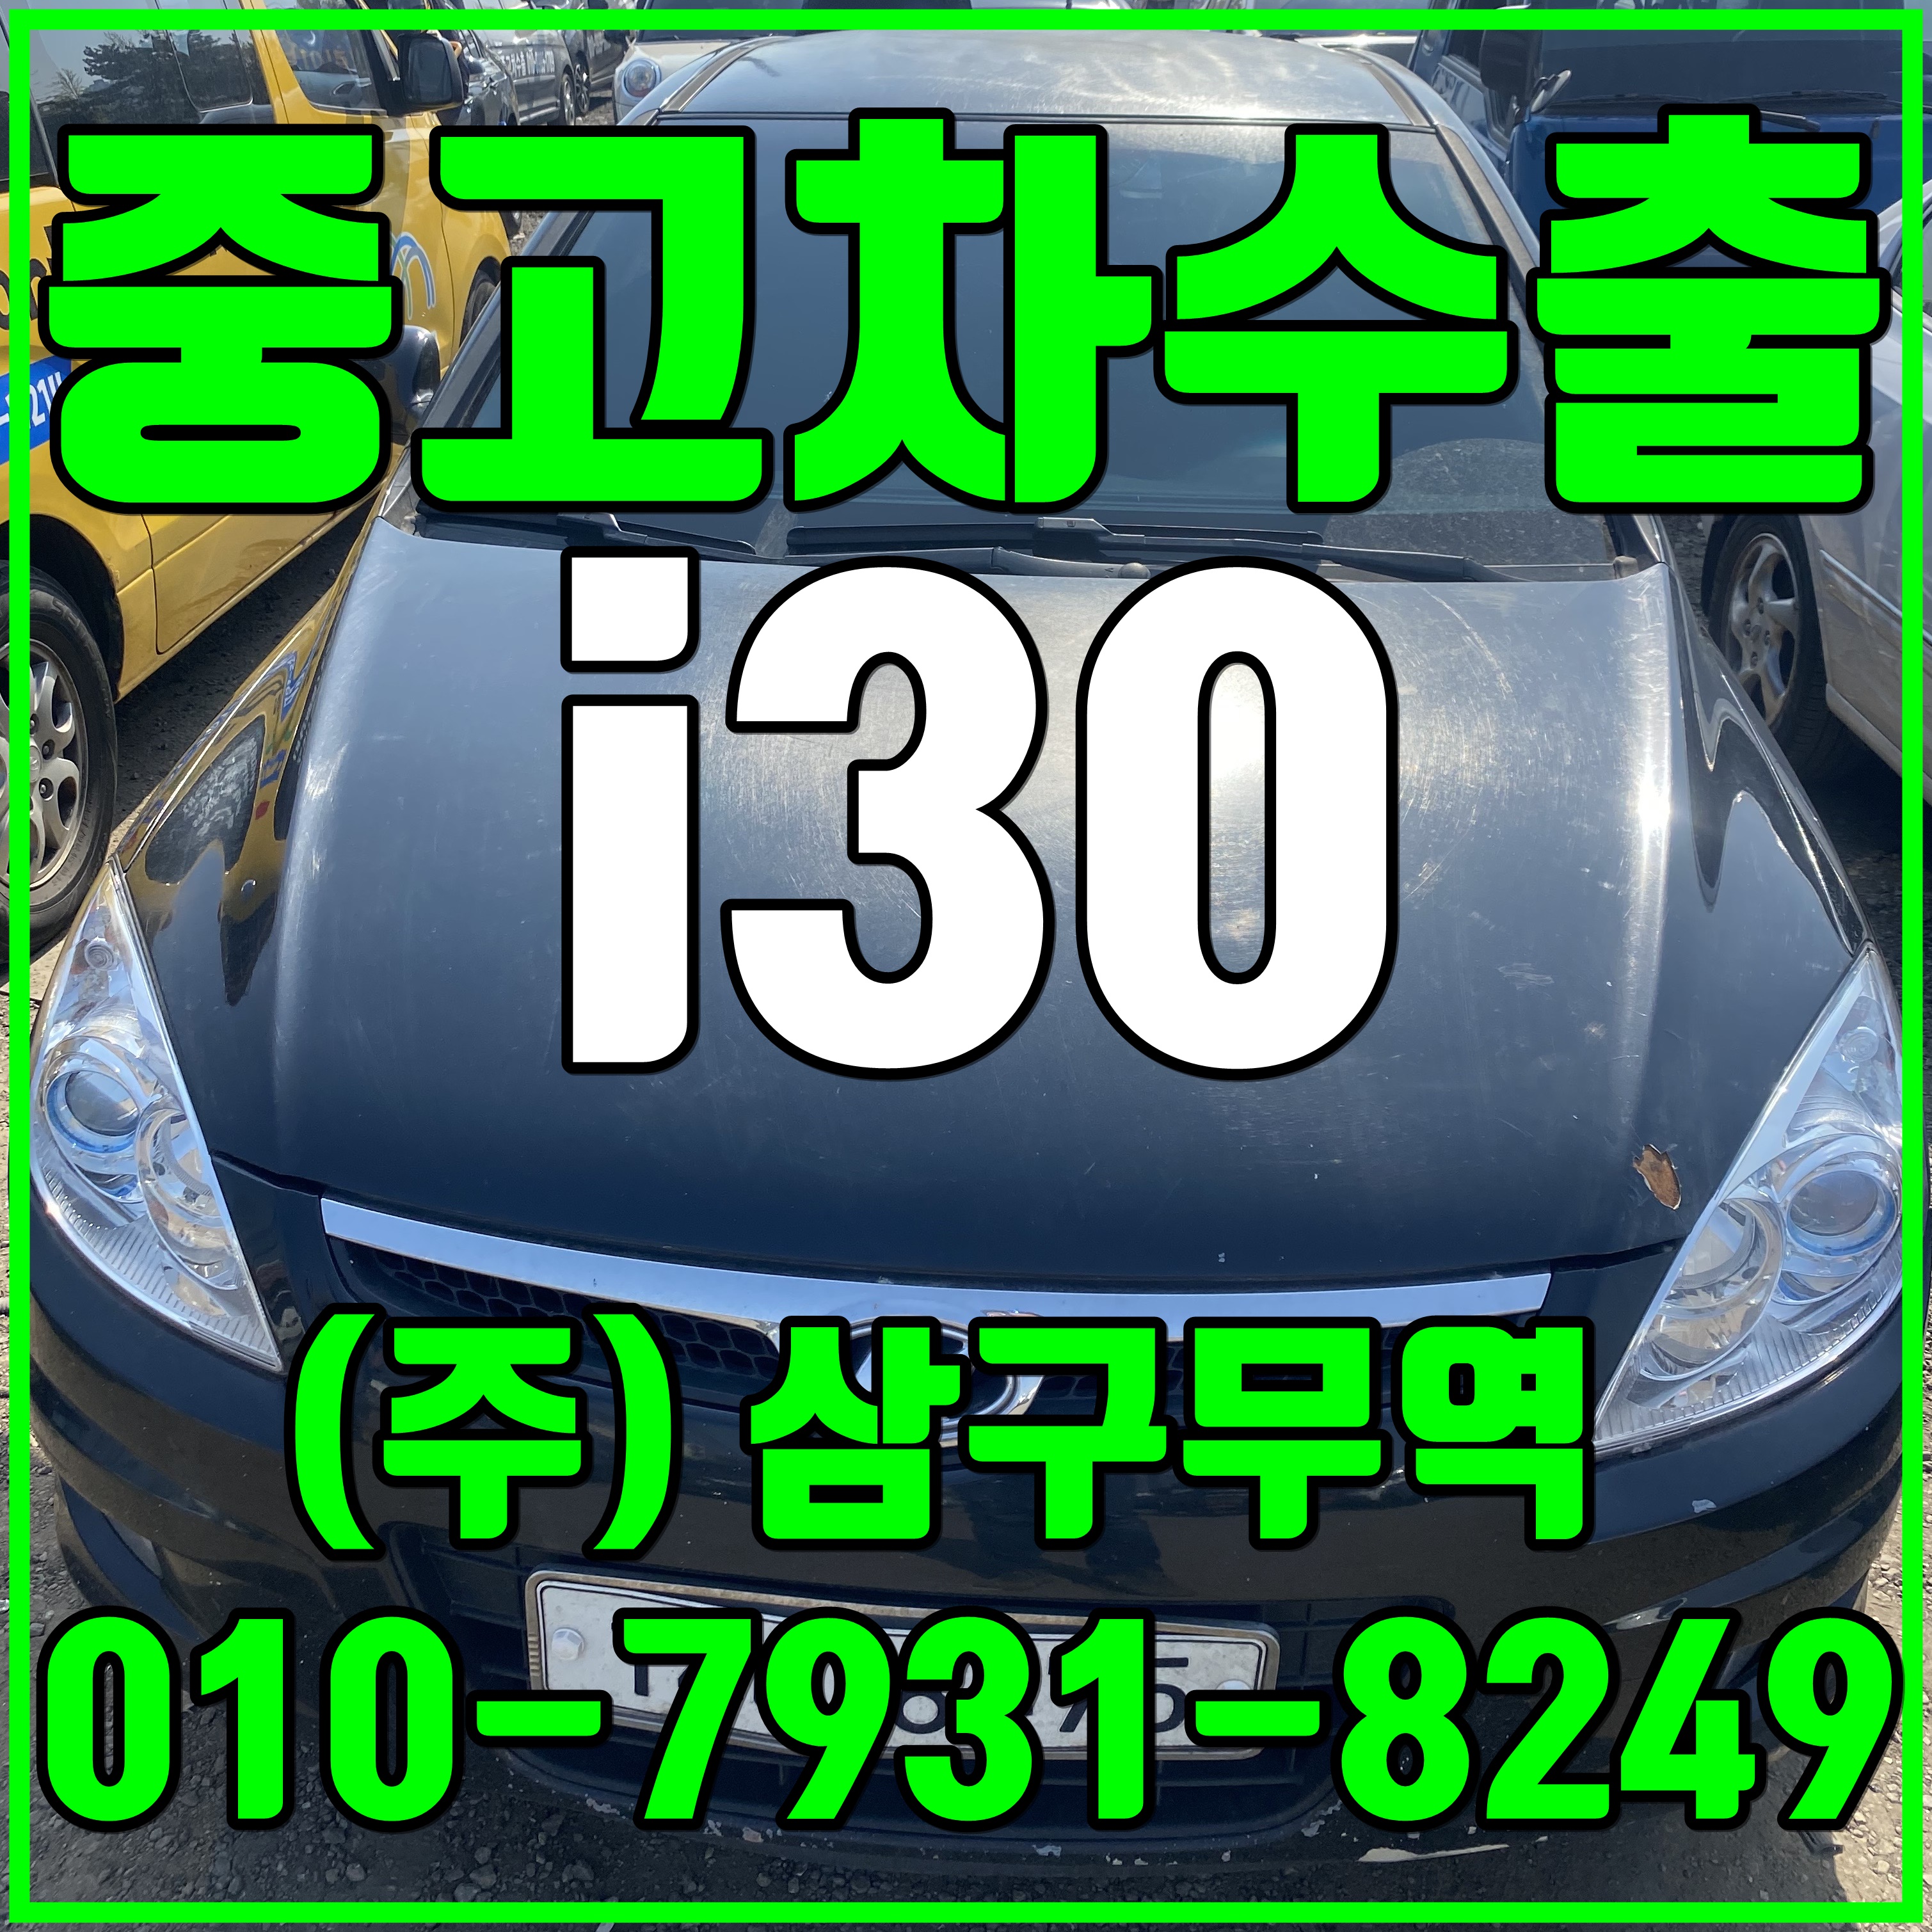 [중고차수출] 서울도봉 i30 가솔린 수출매입후기